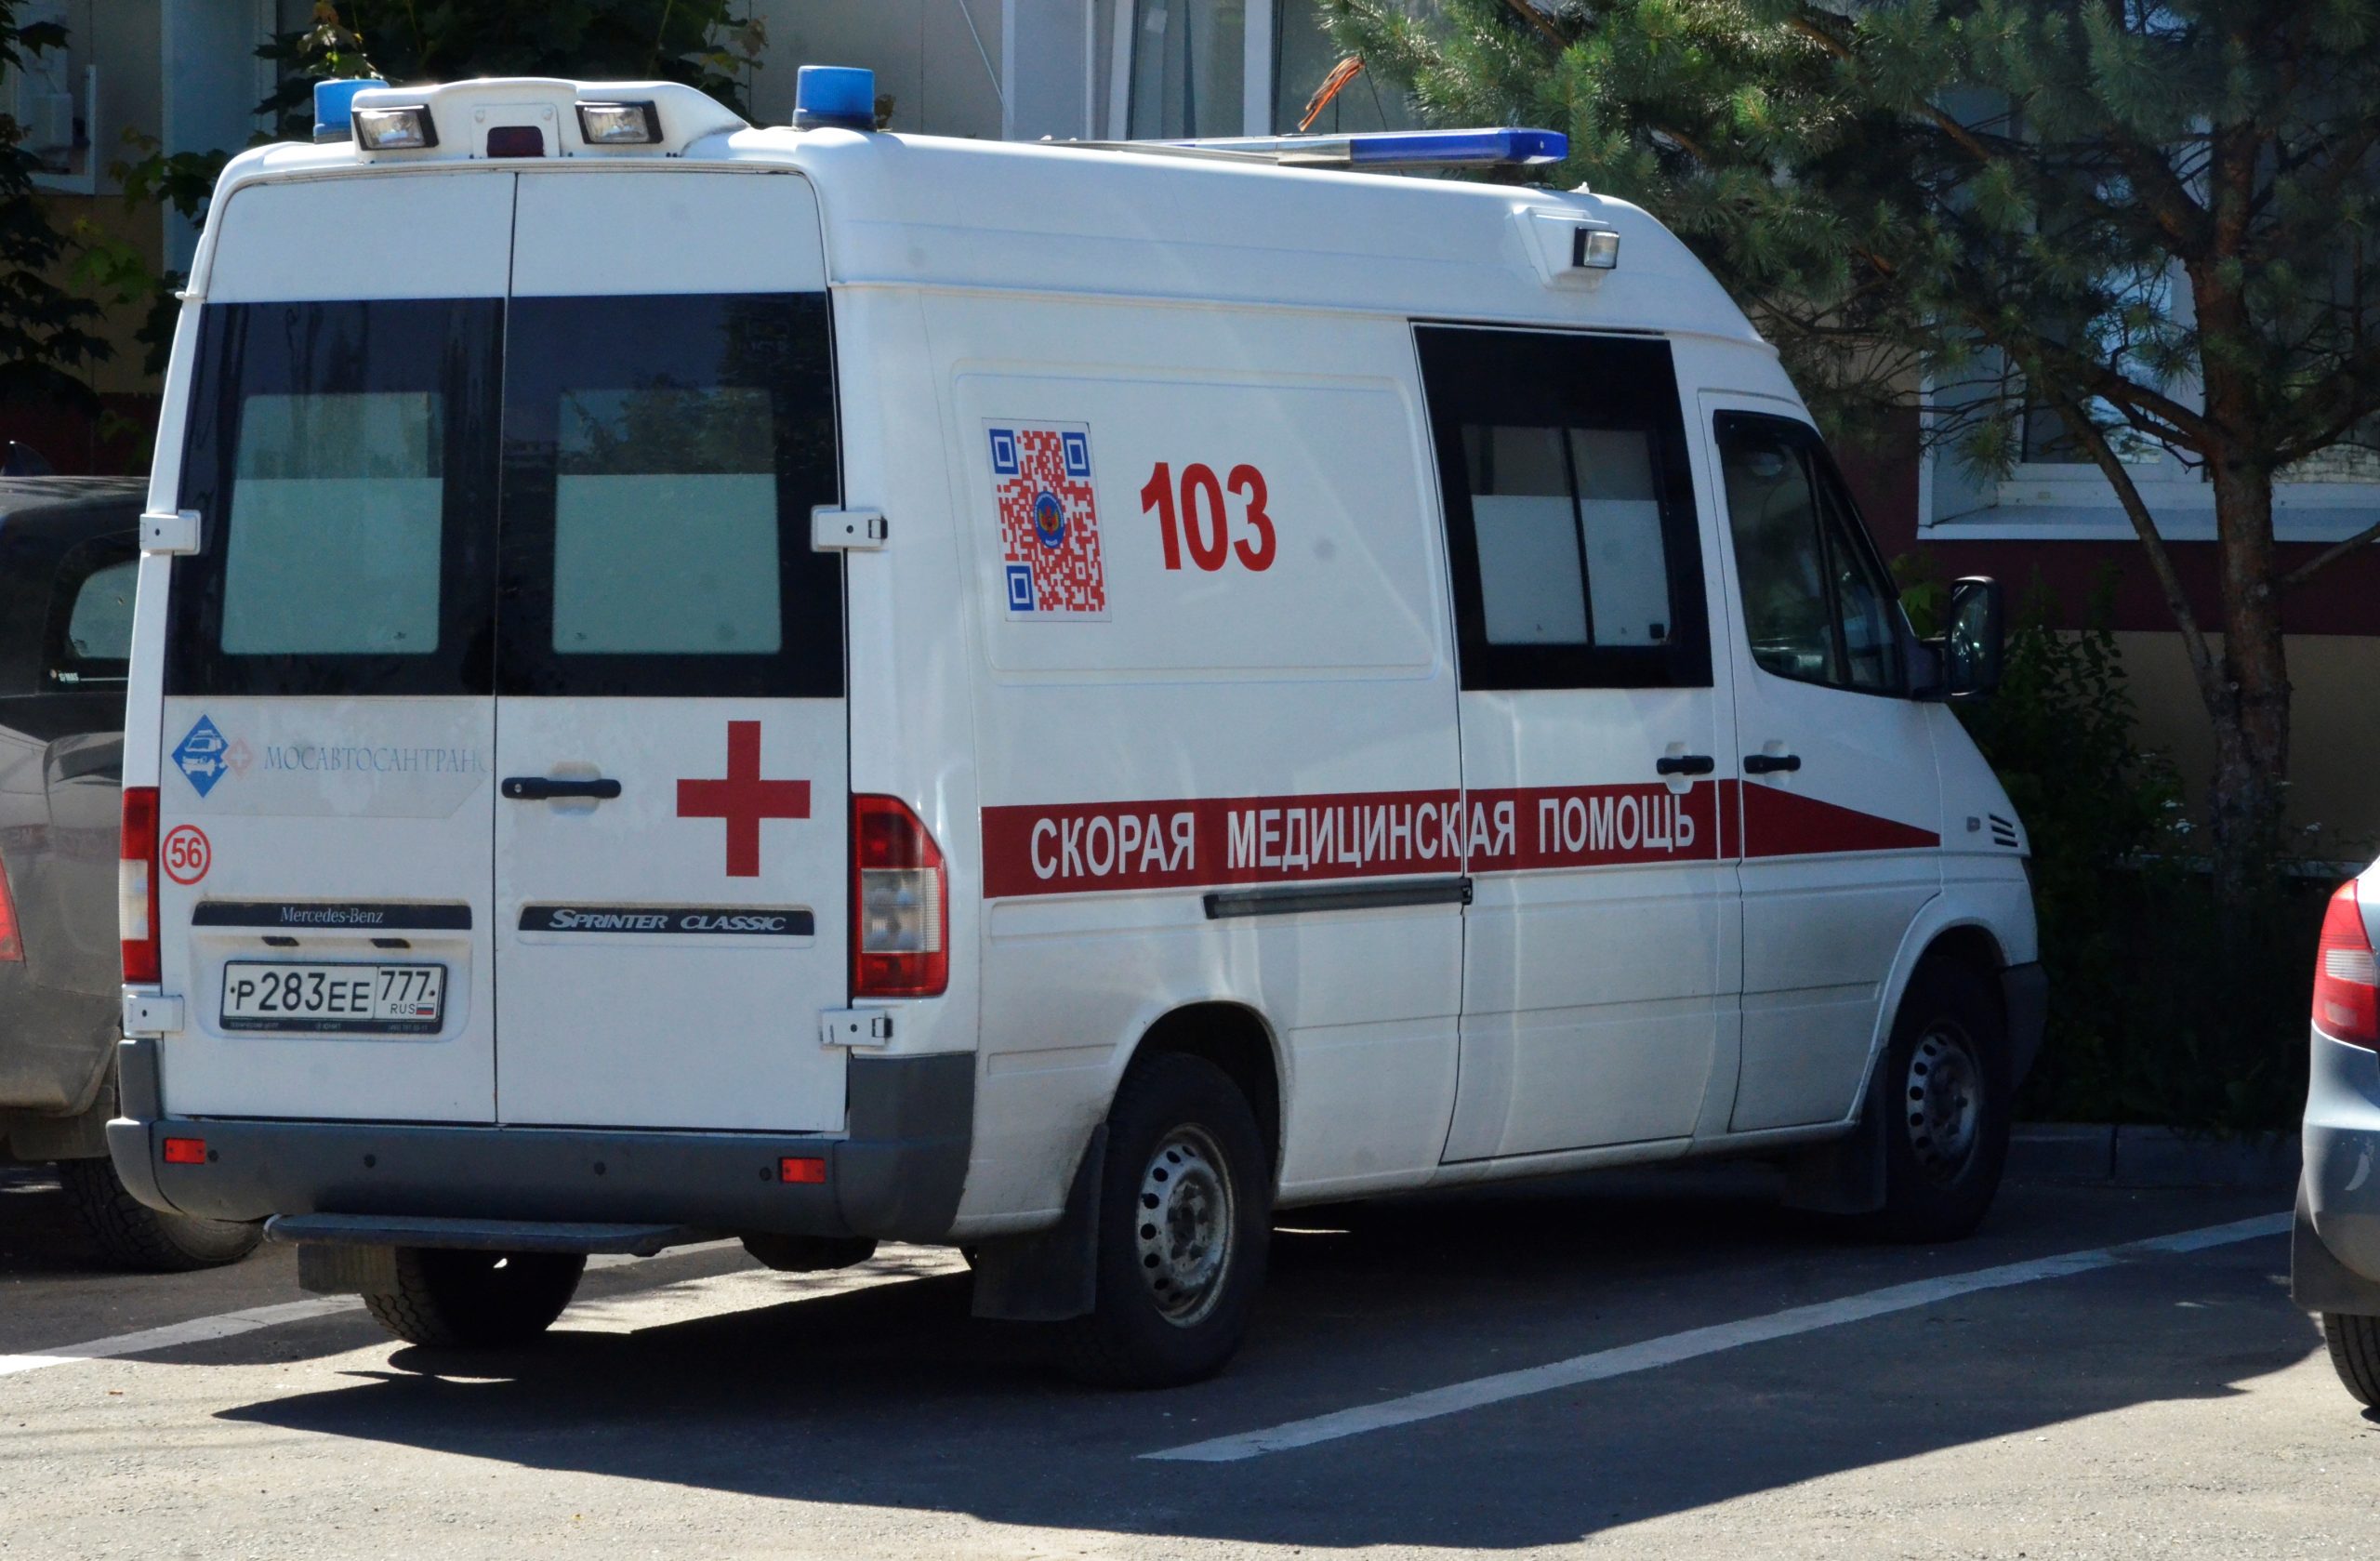 Подстанция скорой помощи начала работу в Московском